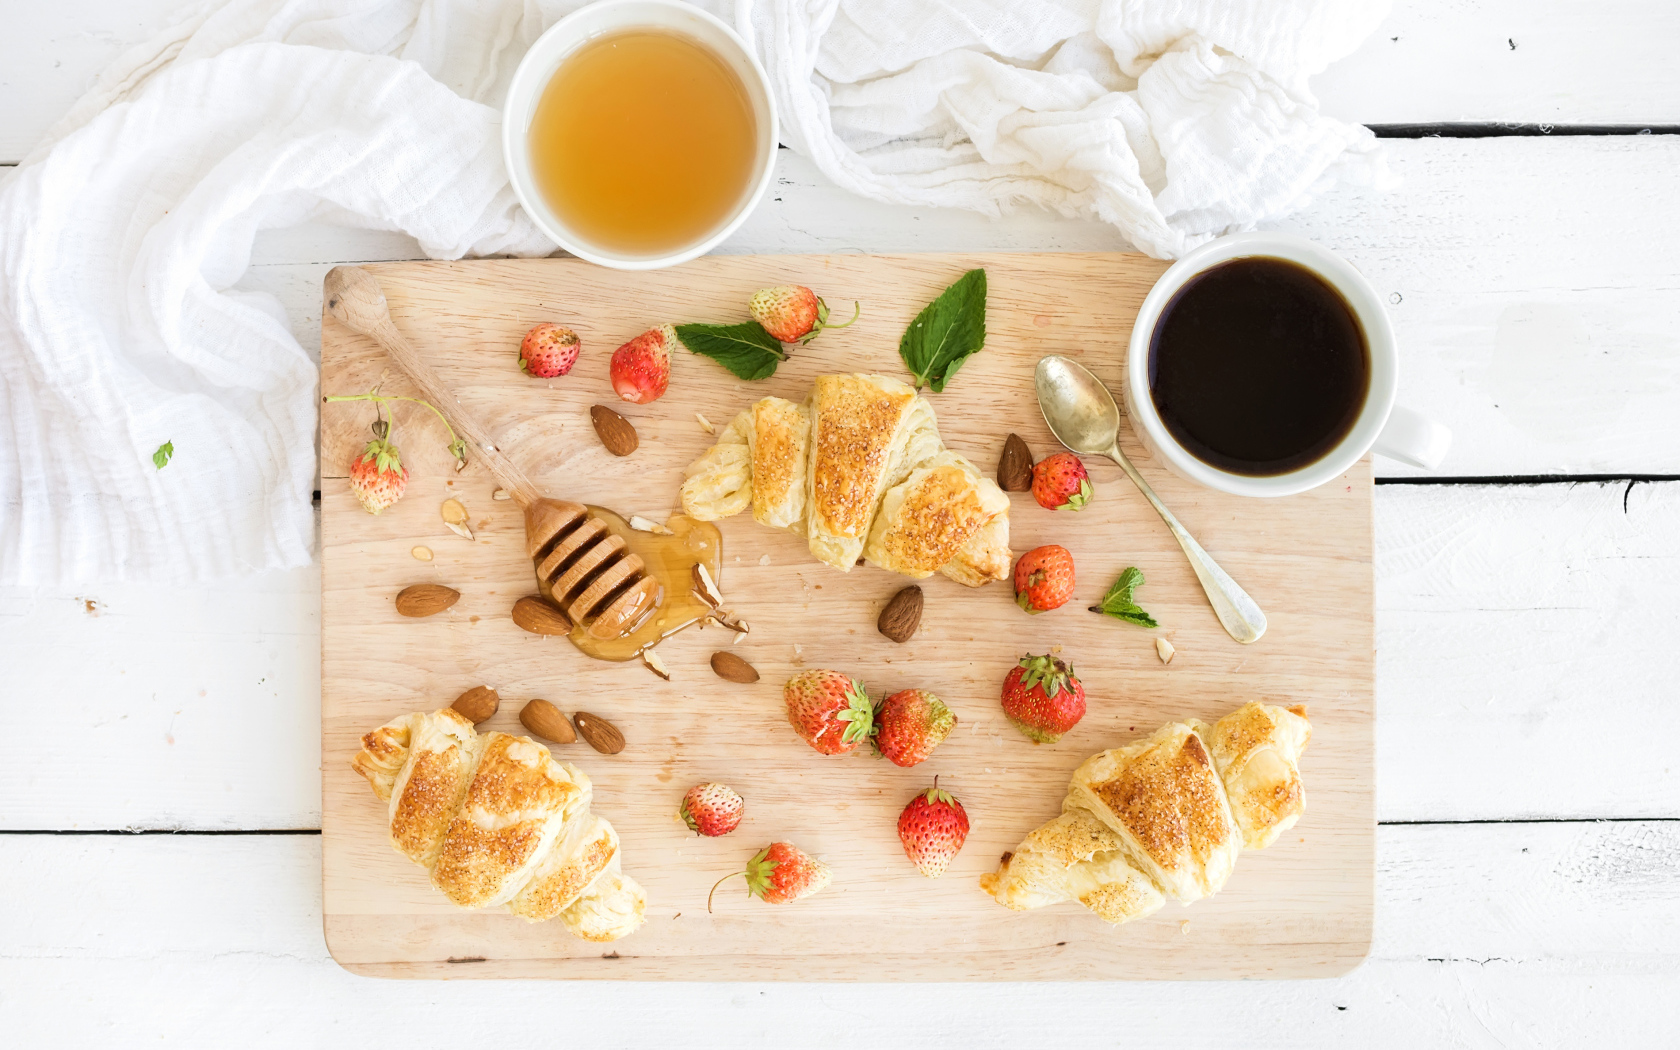 Круассаны, мед, свежие ягоды клубники и кофе на завтрак